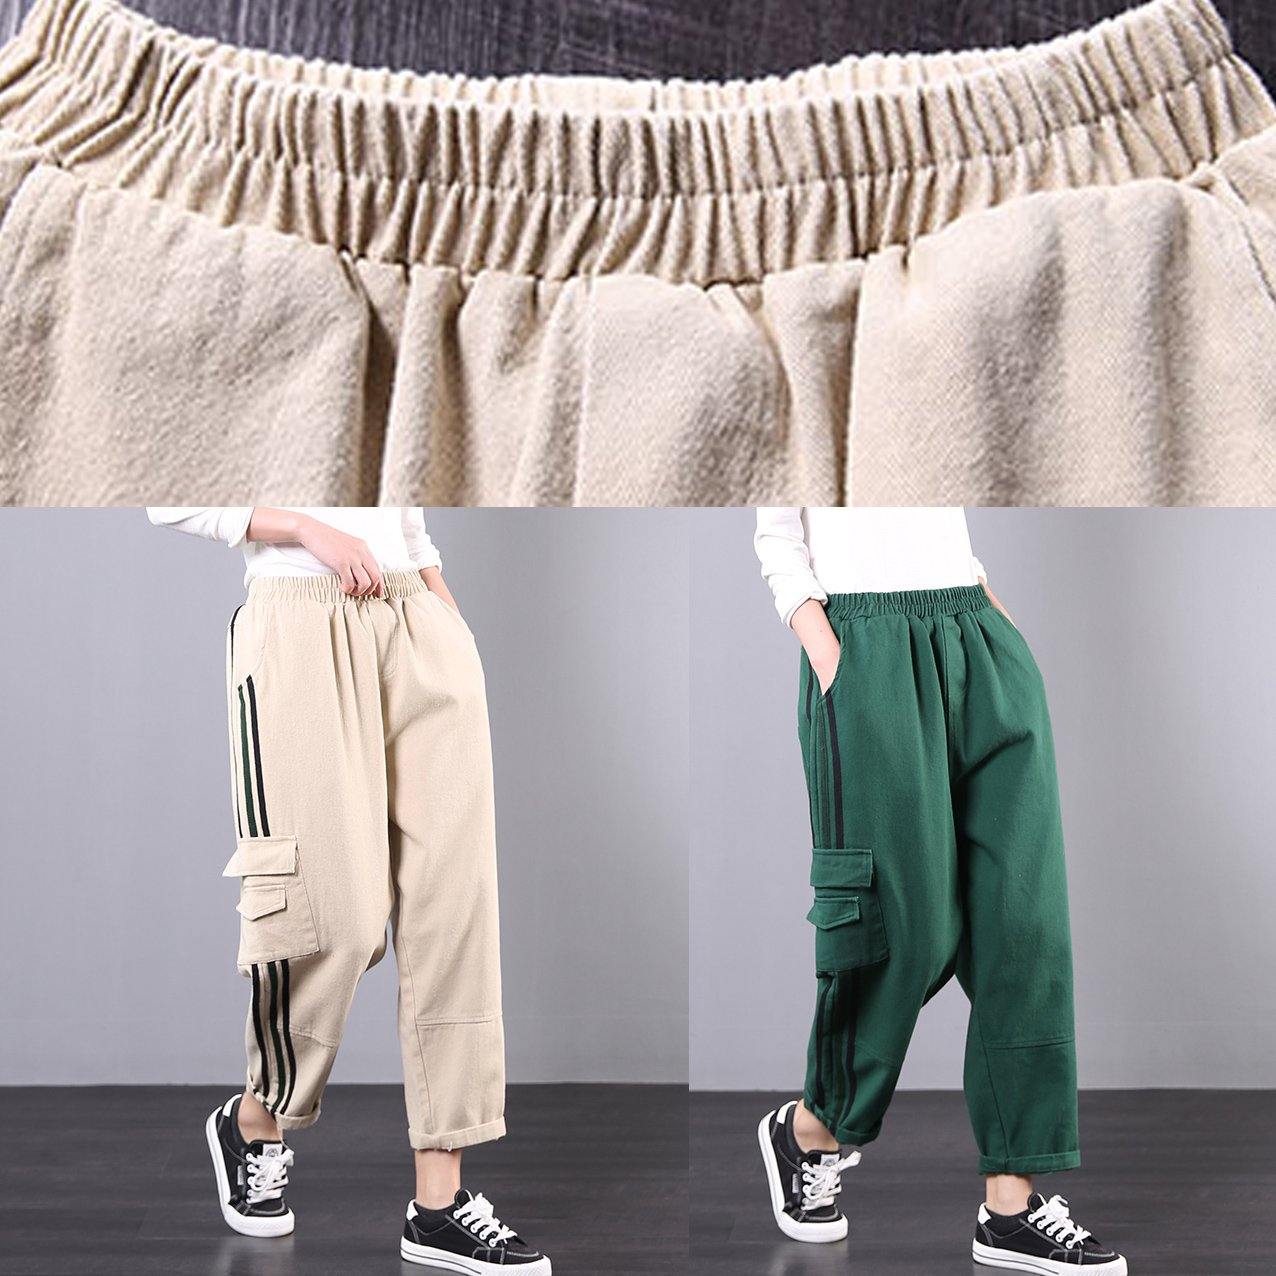 Spring 2020 new large size khaki striped stitching tooling pockets nine casual pants - Omychic